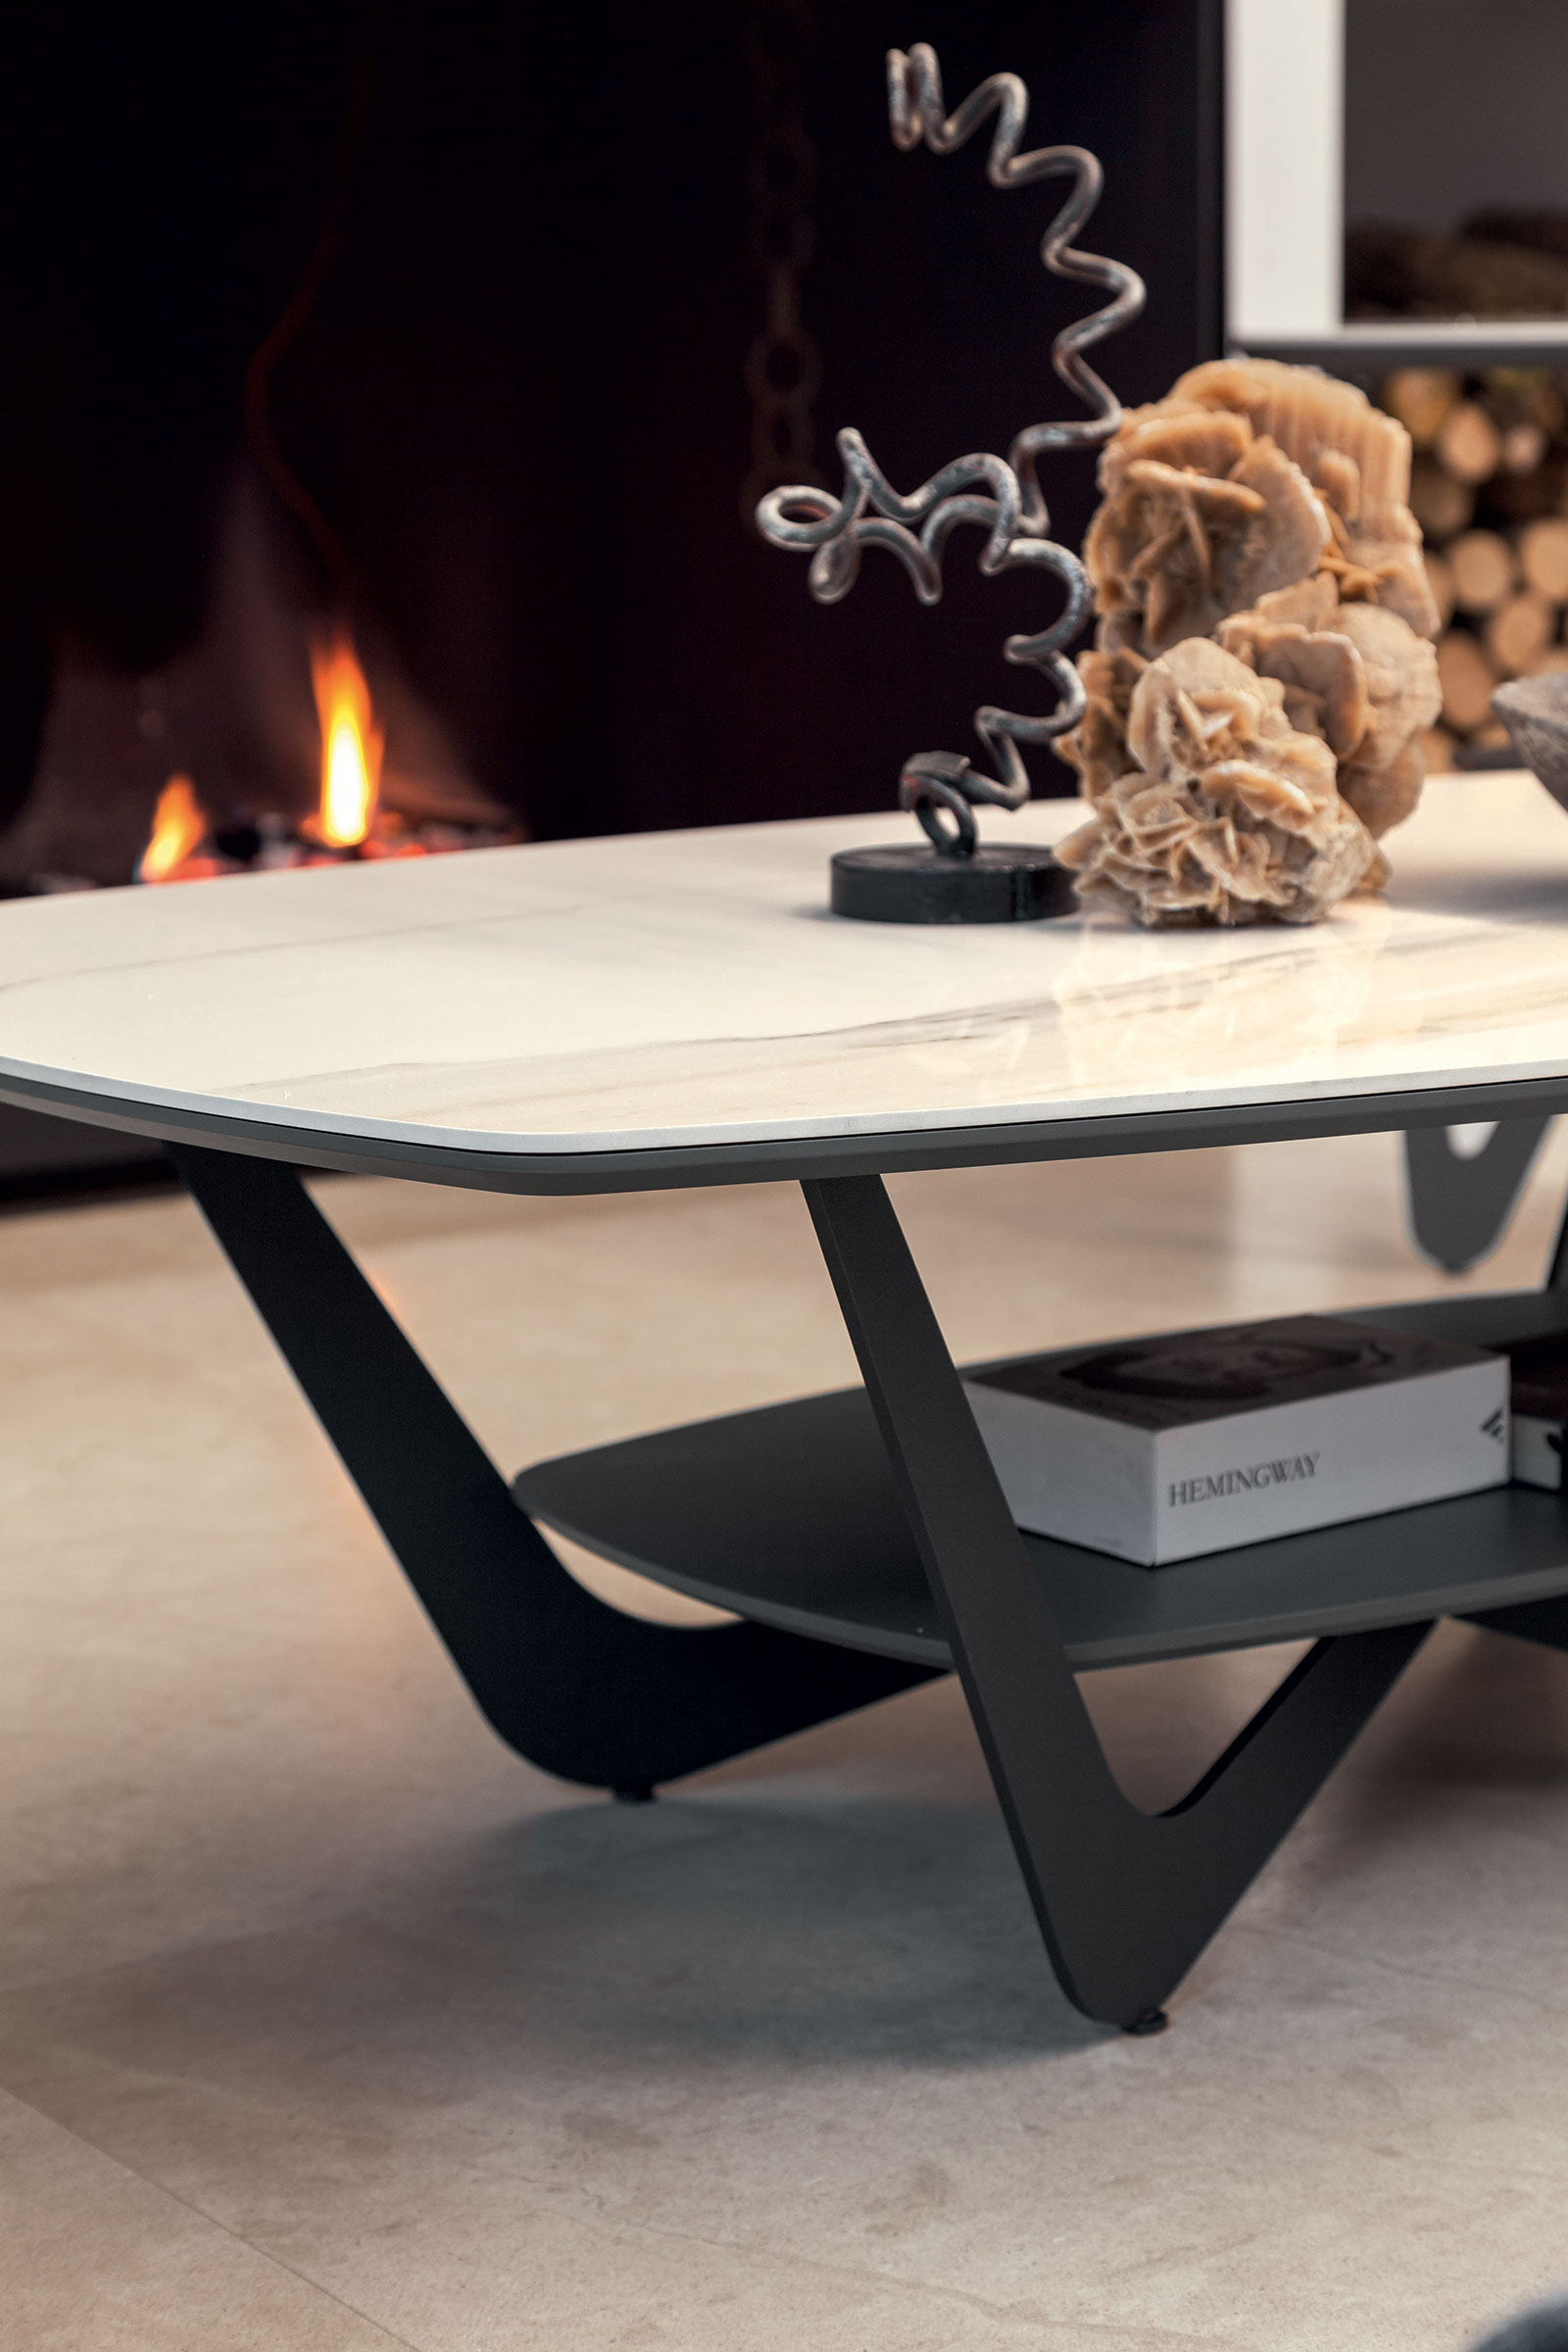 Table basse avec double plateau en céramique et en métal. Vente en ligne de meubles design haut de gamme pour la maison et le bureau. Livraison à domicile.